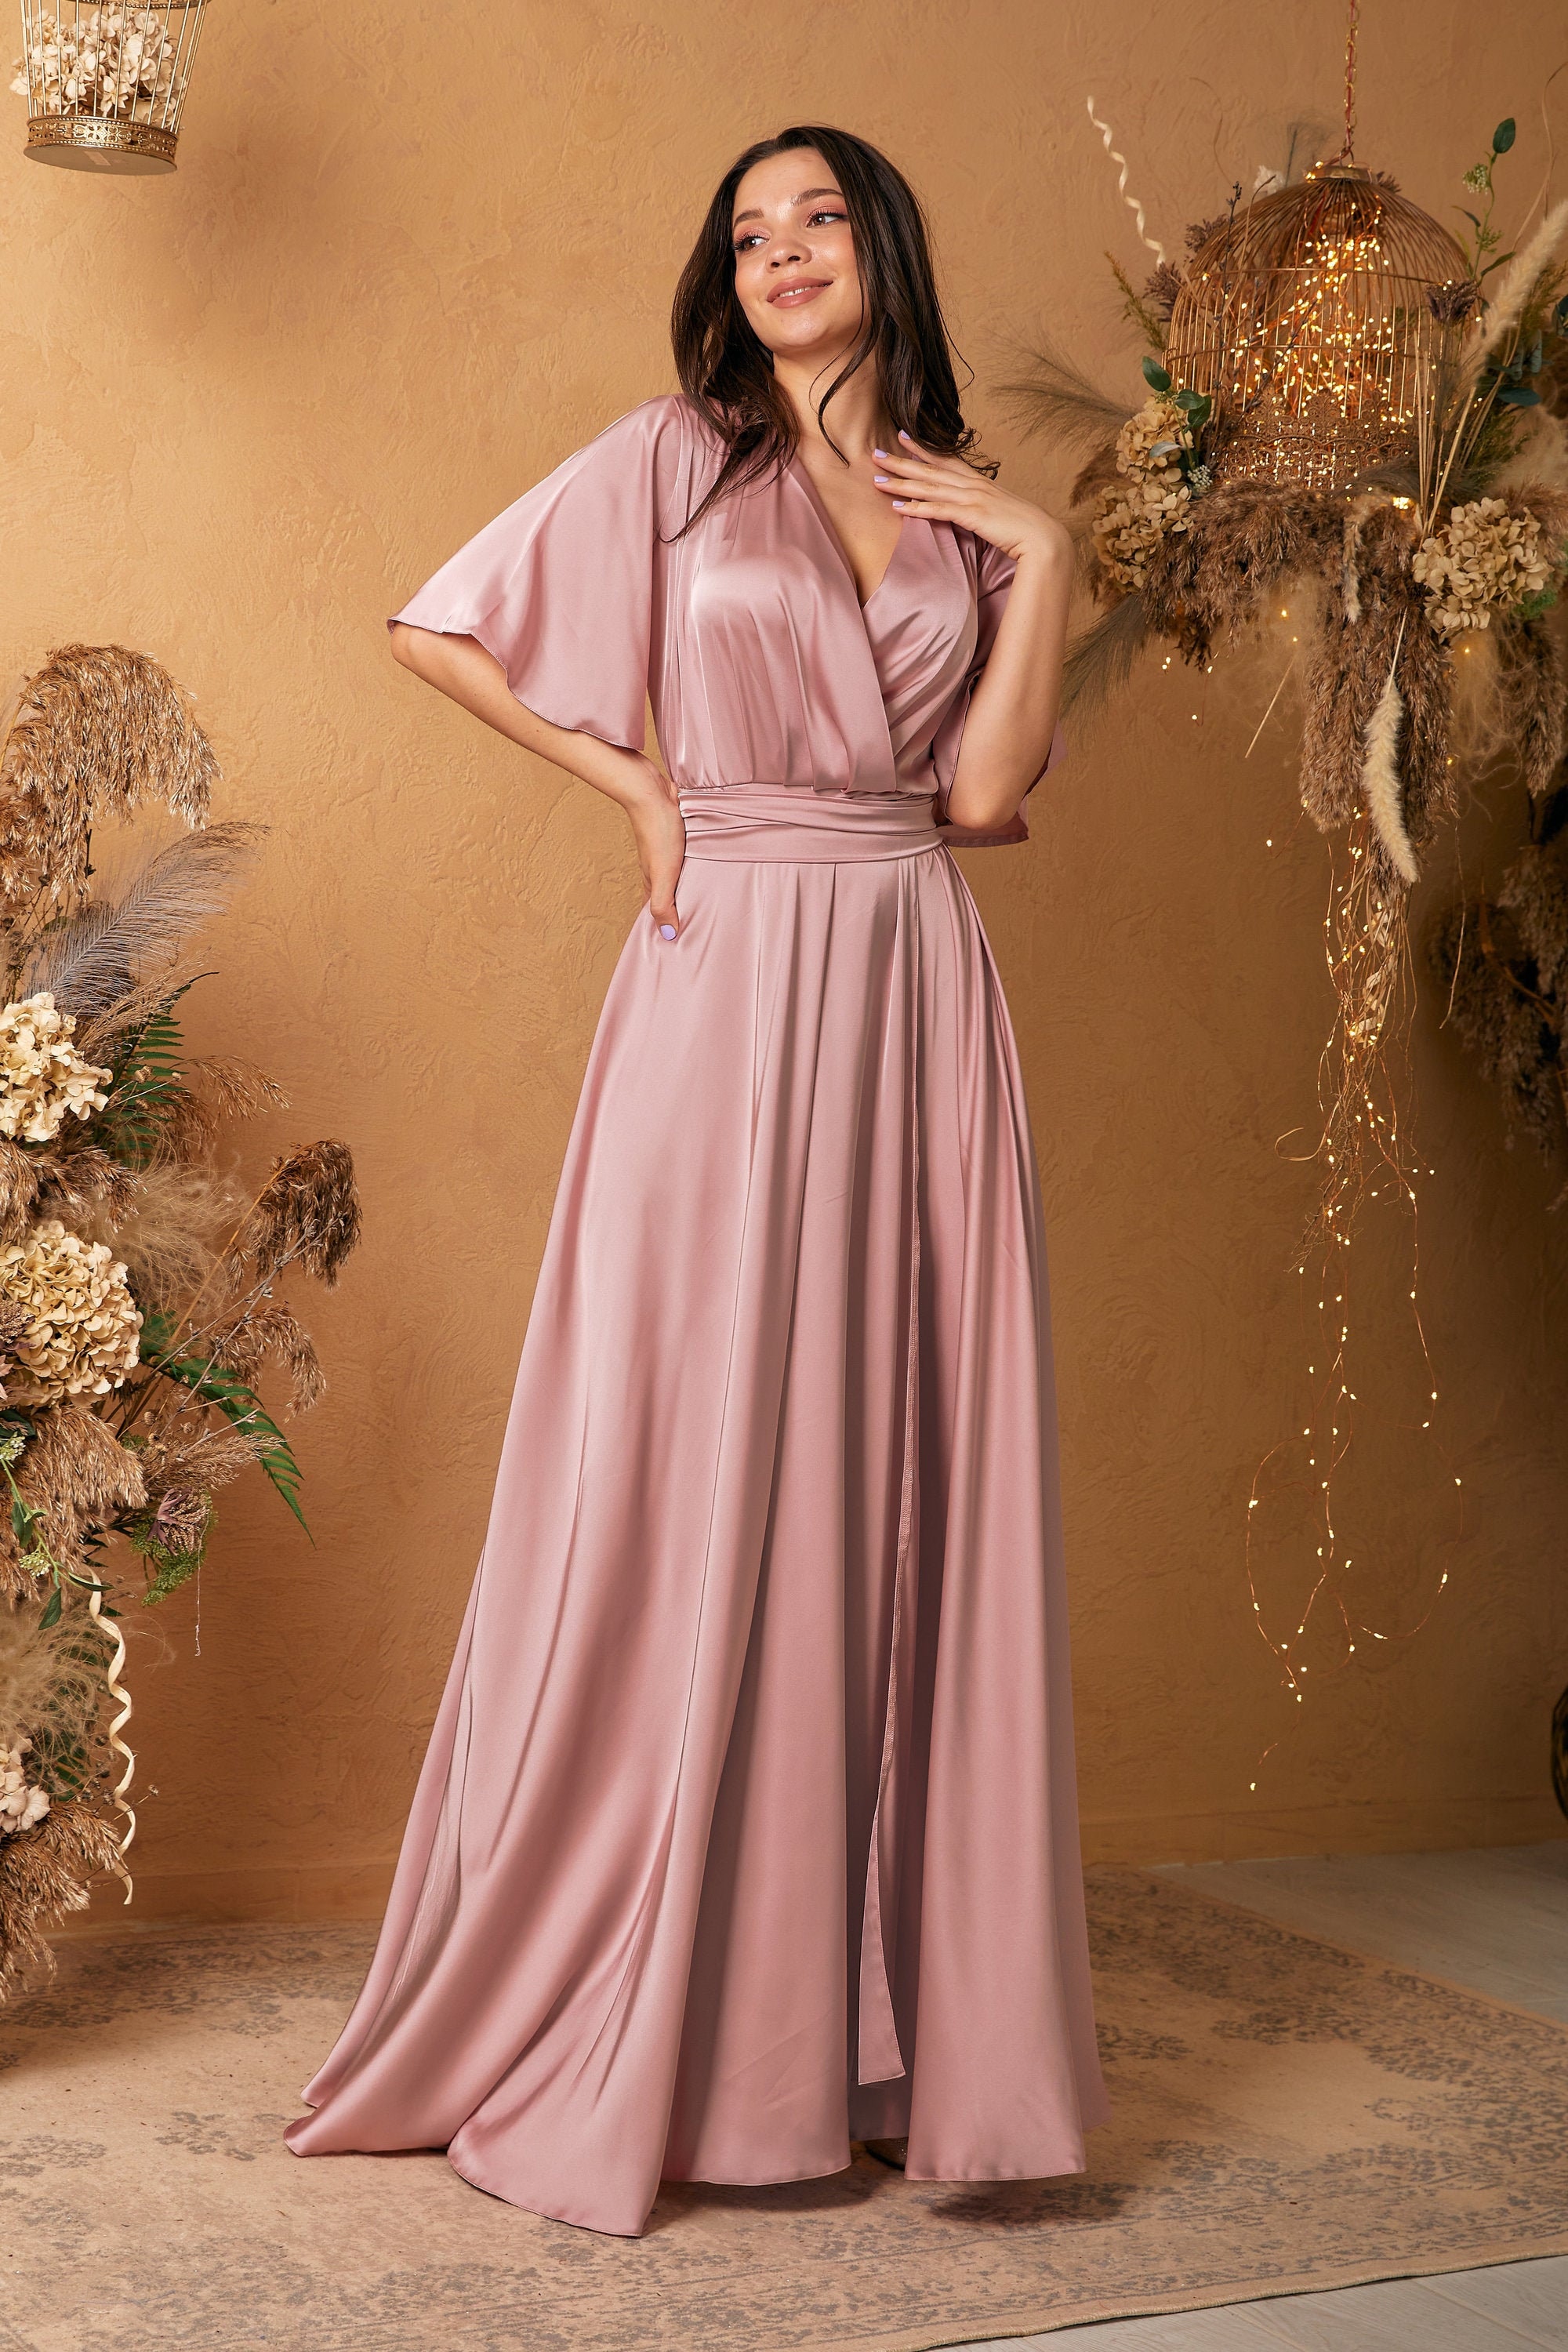 silk pink dress